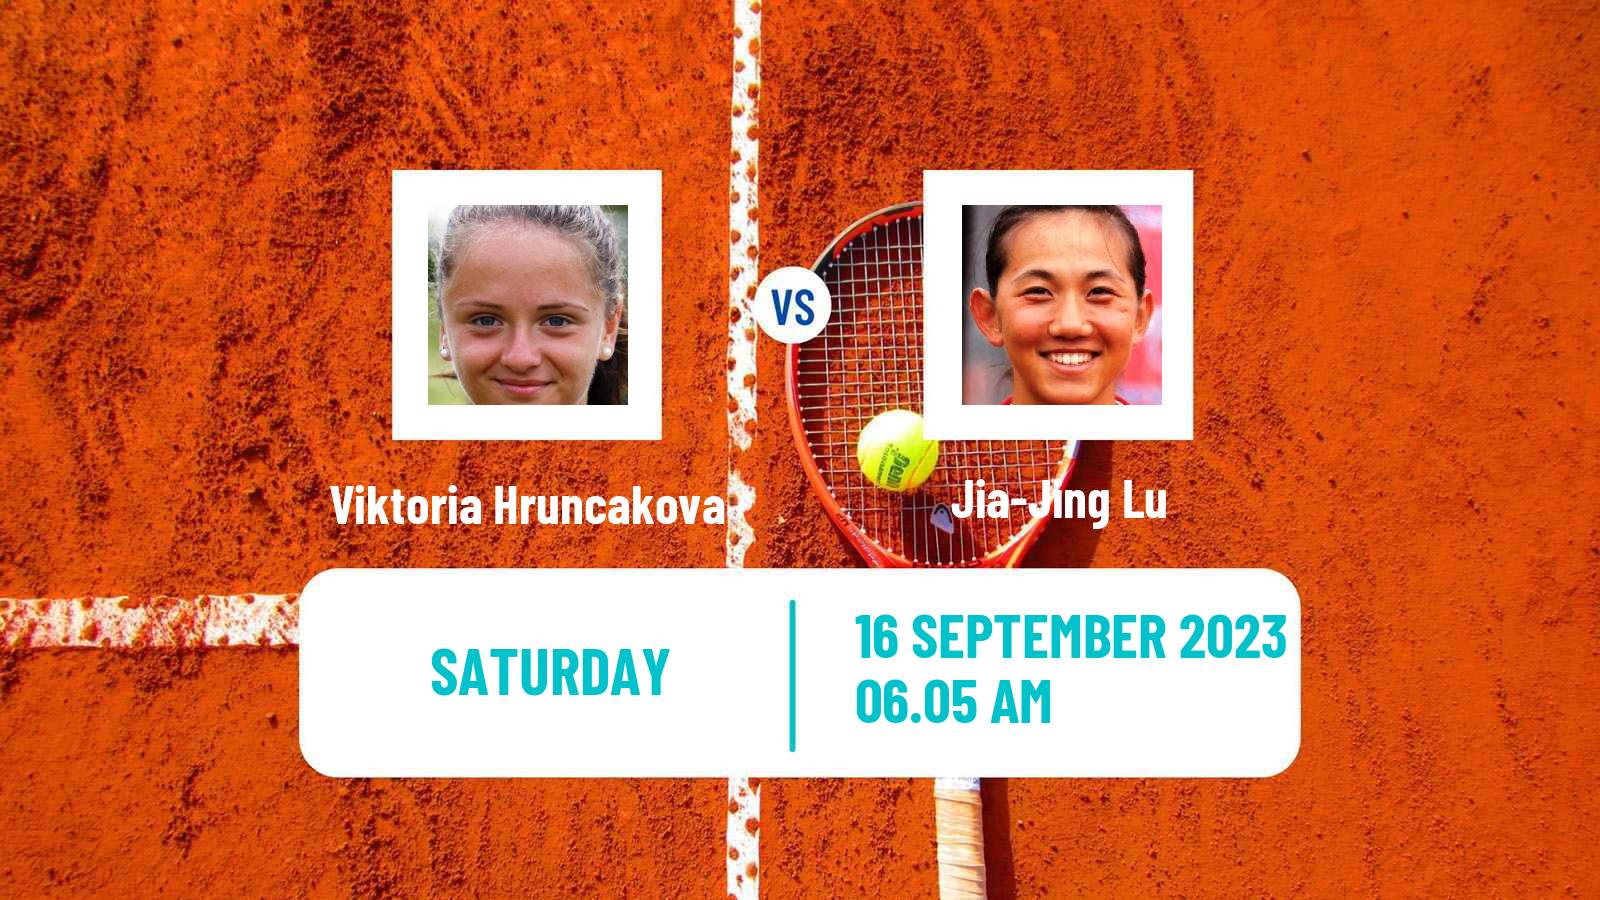 Tennis WTA Guangzhou Viktoria Hruncakova - Jia-Jing Lu